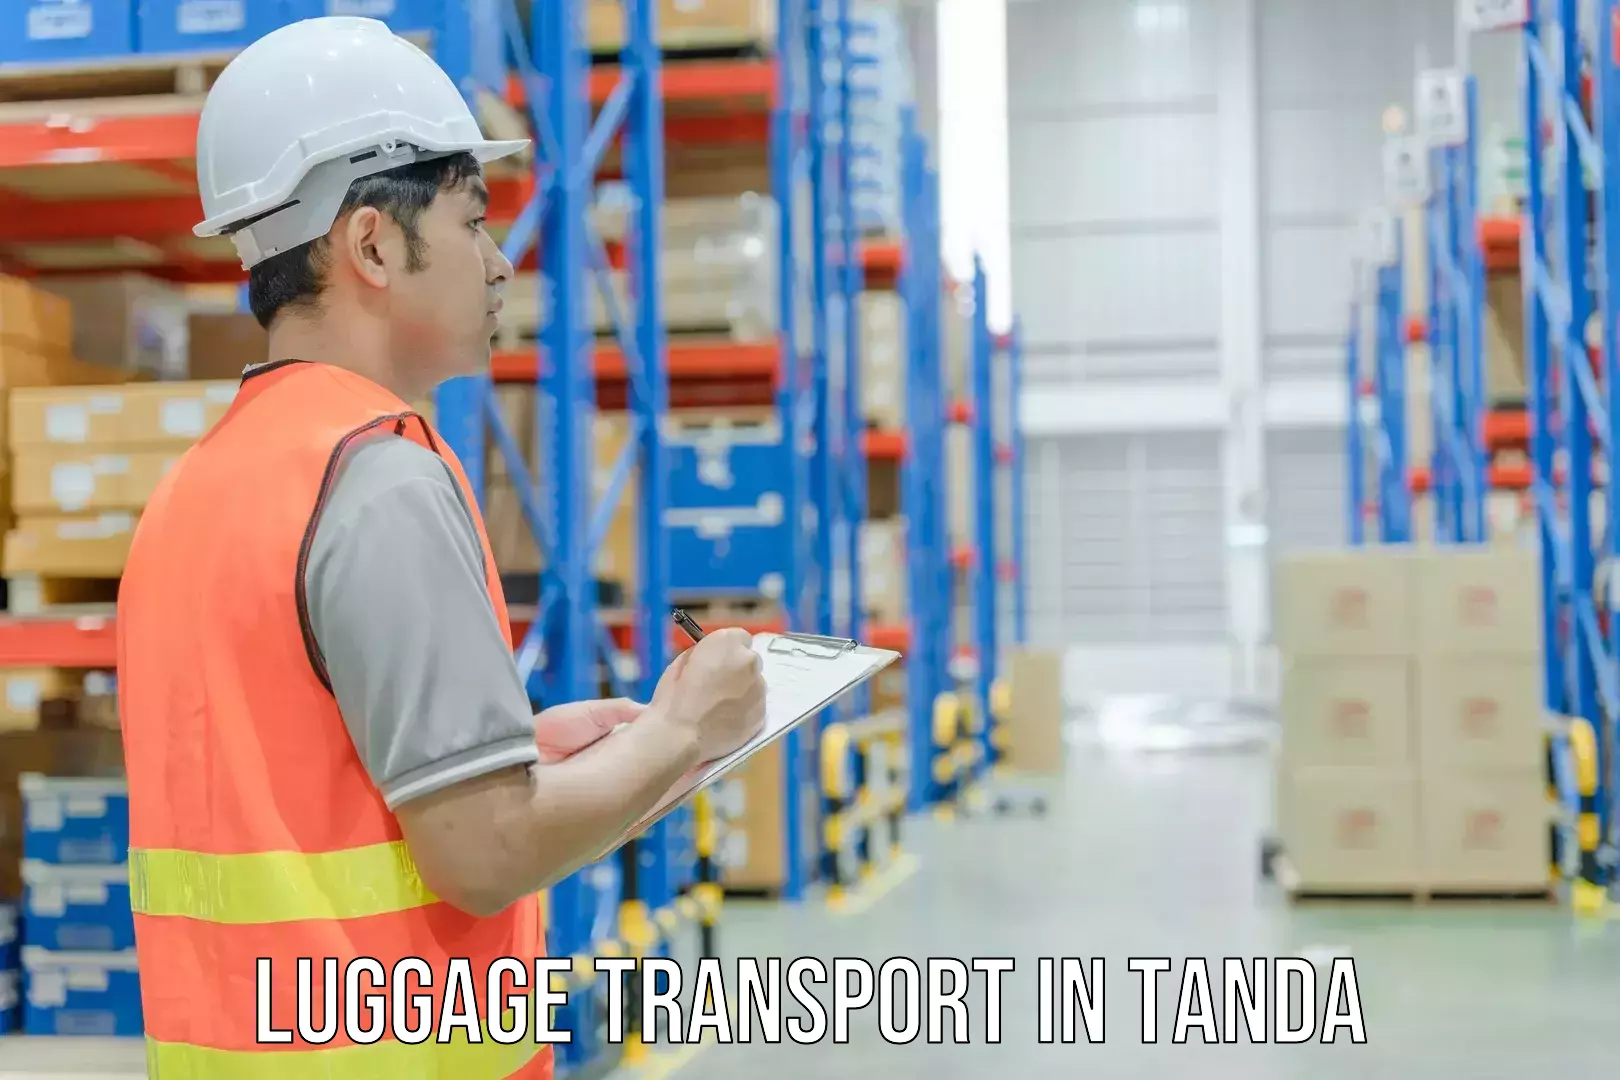 Baggage transport management in Tanda